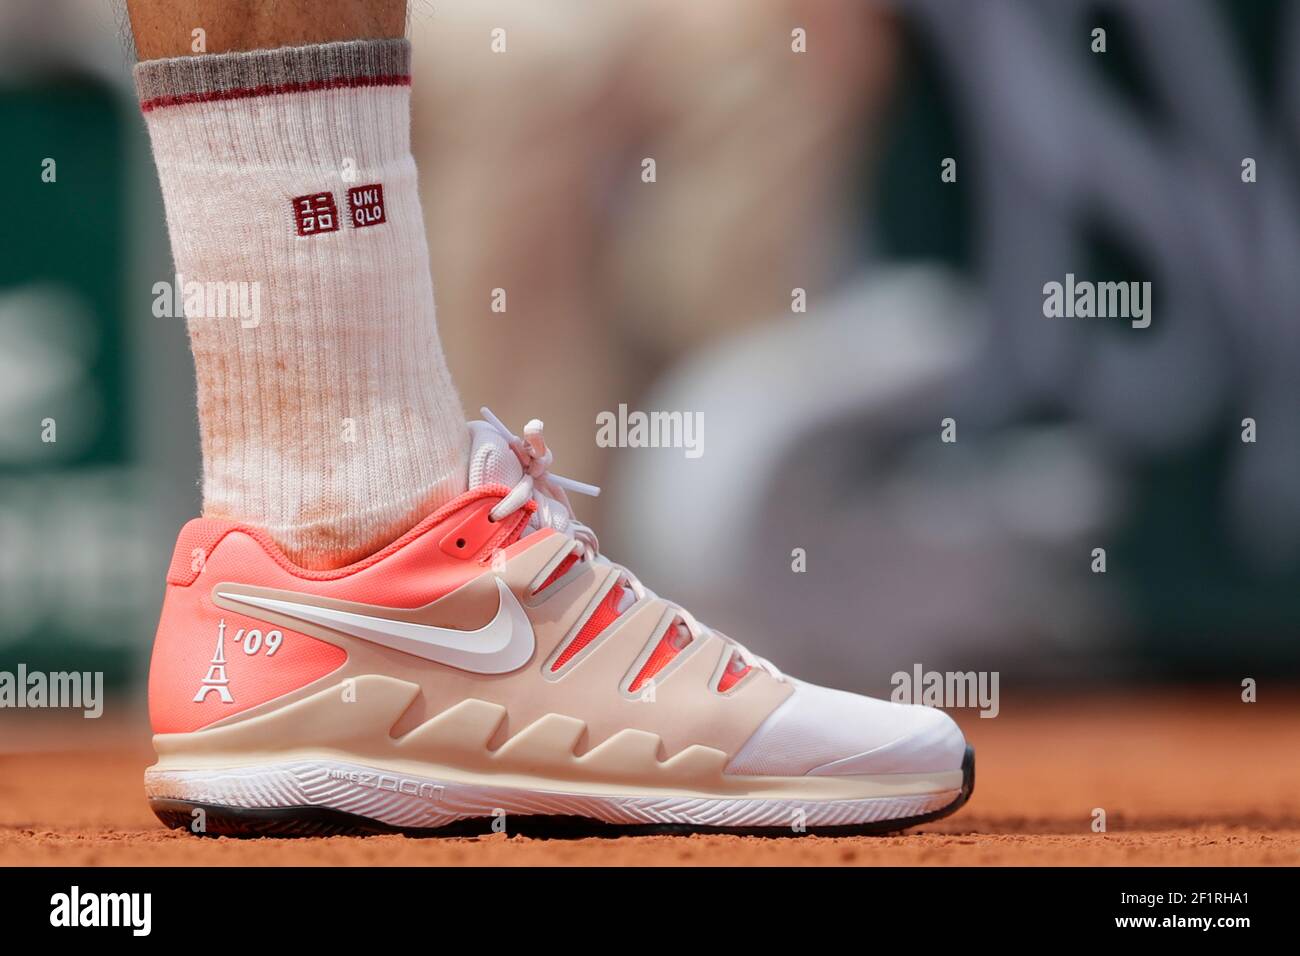 Nike Schuhe von Roger FEDERER (SUI) mit Eiffelturm 09 während der  Roland-Garros 2019, Grand Slam